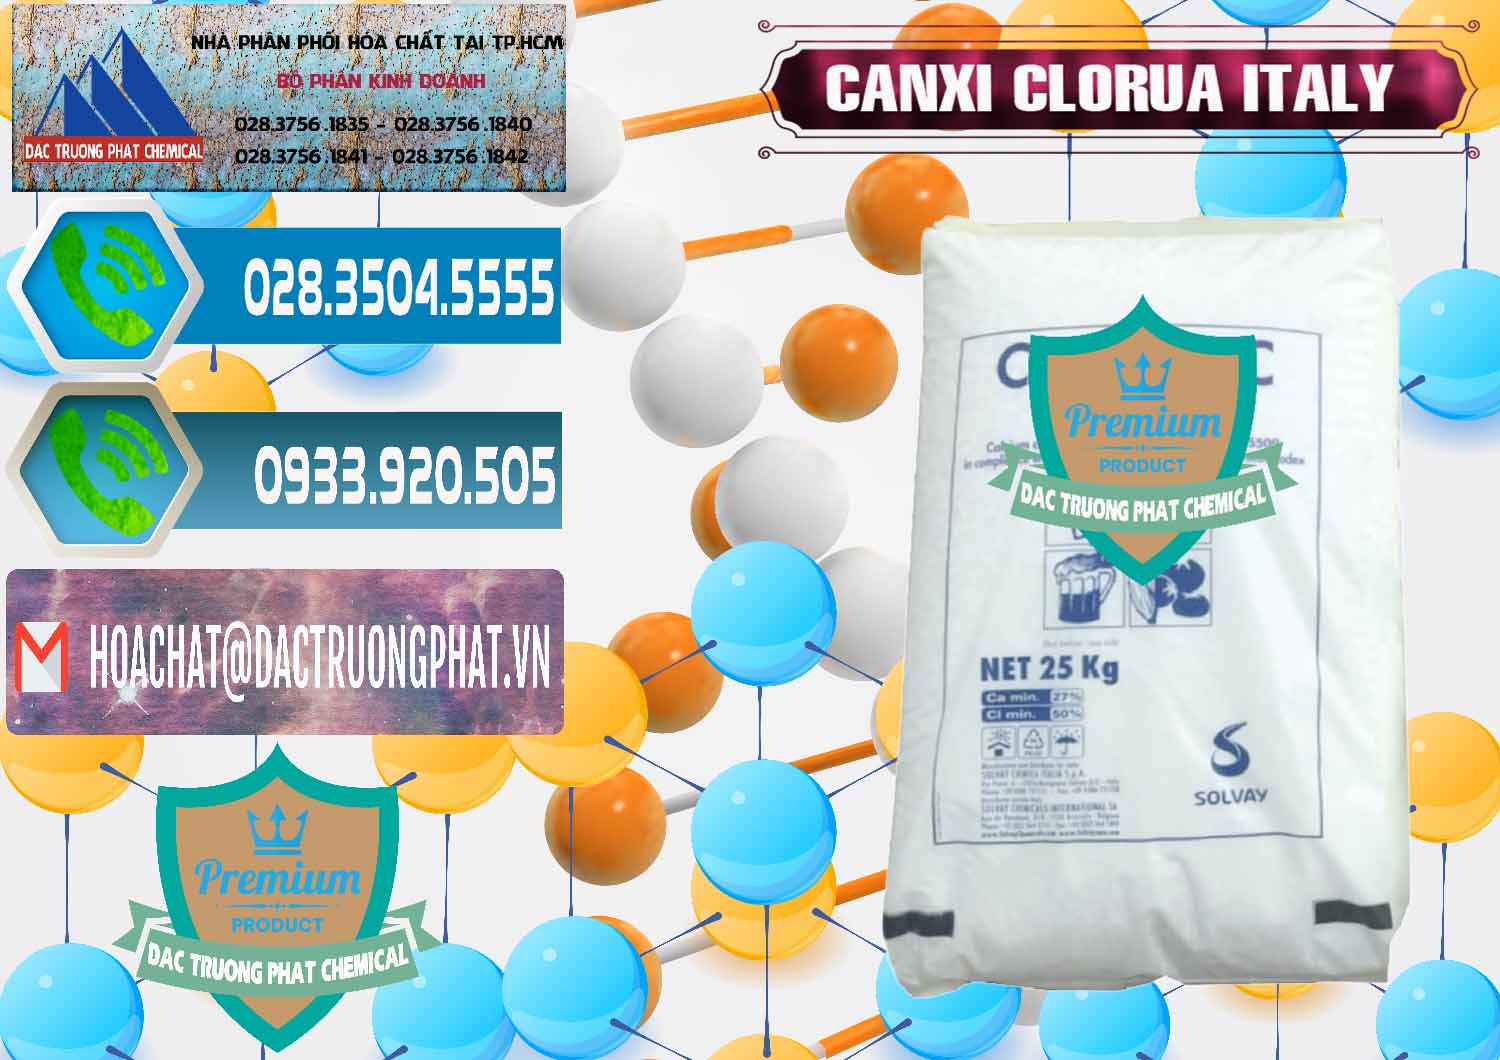 Cty chuyên kinh doanh & bán CaCl2 – Canxi Clorua Food Grade Ý Italy - 0435 - Bán & phân phối hóa chất tại TP.HCM - congtyhoachat.net